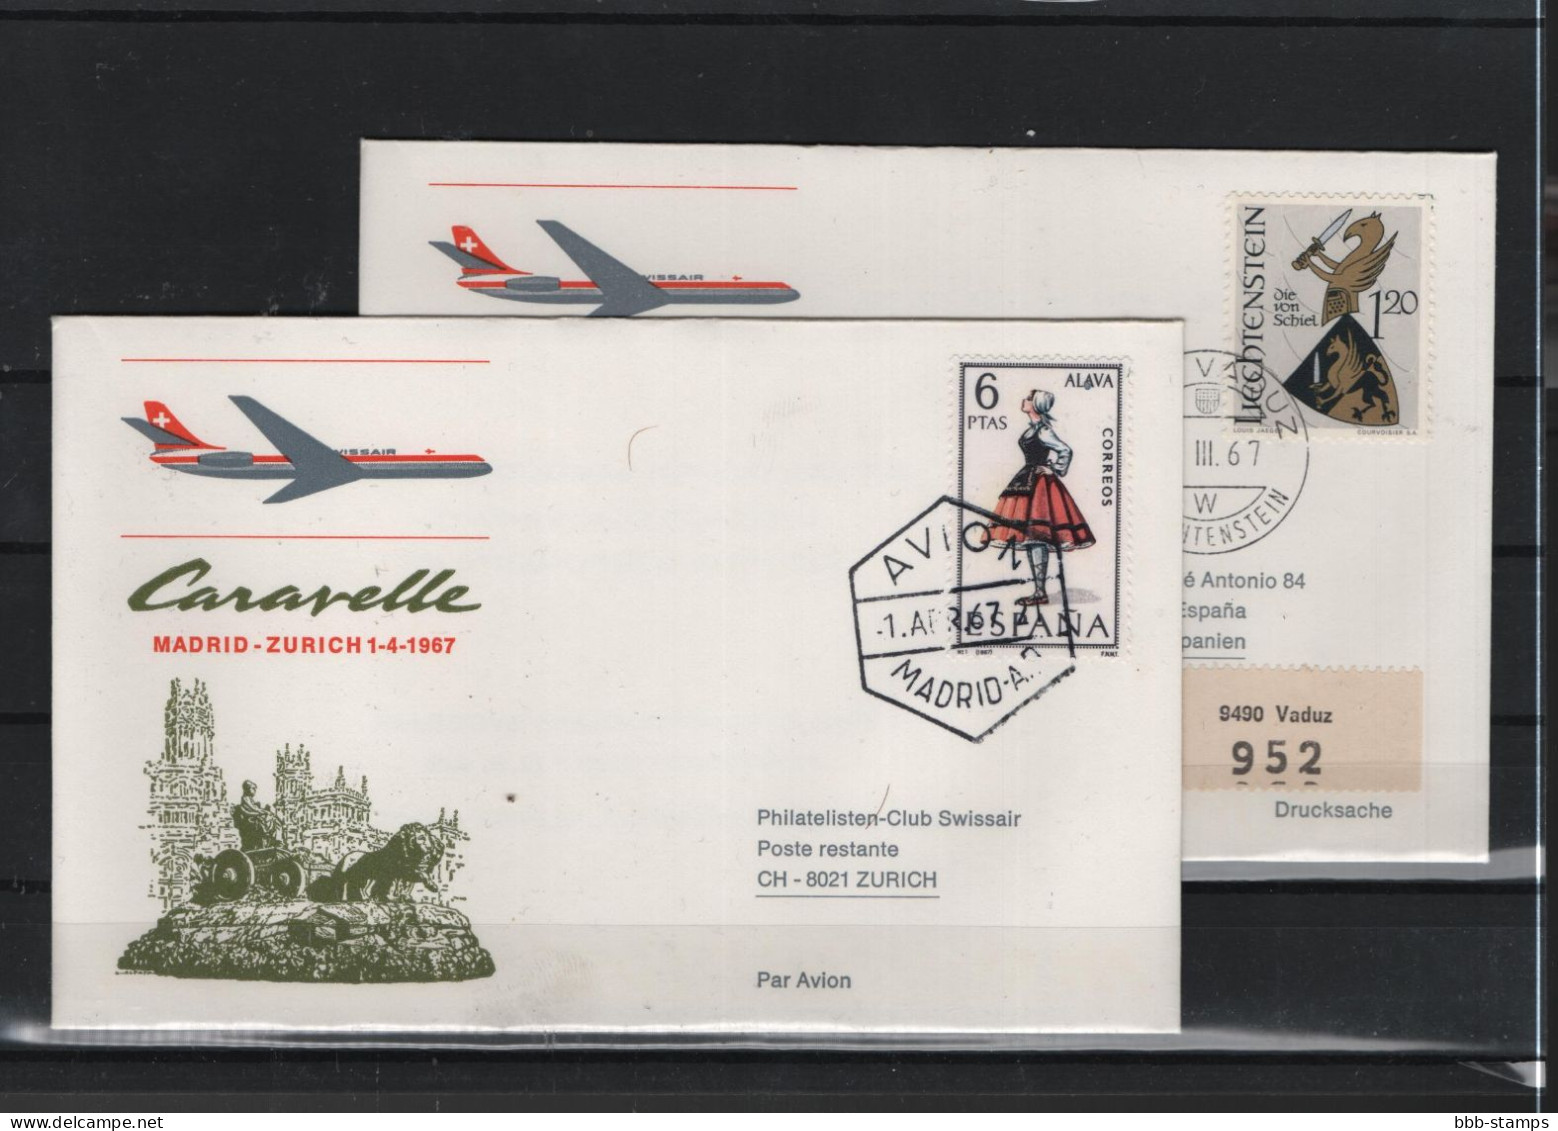 Schweiz Air Mail Swissair  FFC  31.3.1967 Zürich - Madrid - Primeros Vuelos